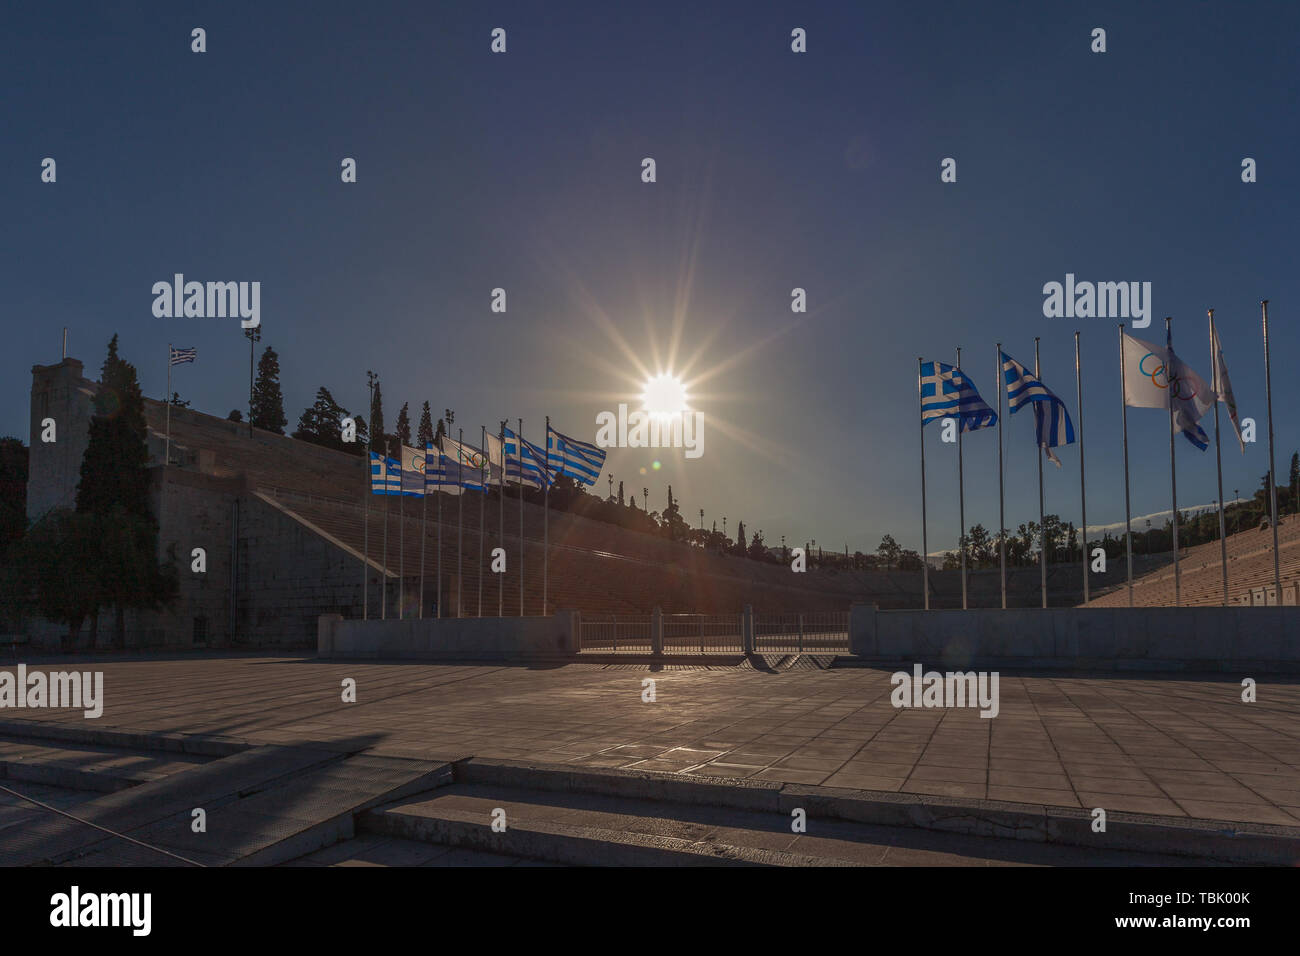 Athènes, Grèce - 25 octobre 2018 : Soleil sur le stade Panathinaiko drapeaux éclairante de la Grèce et drapeaux olympiques Banque D'Images